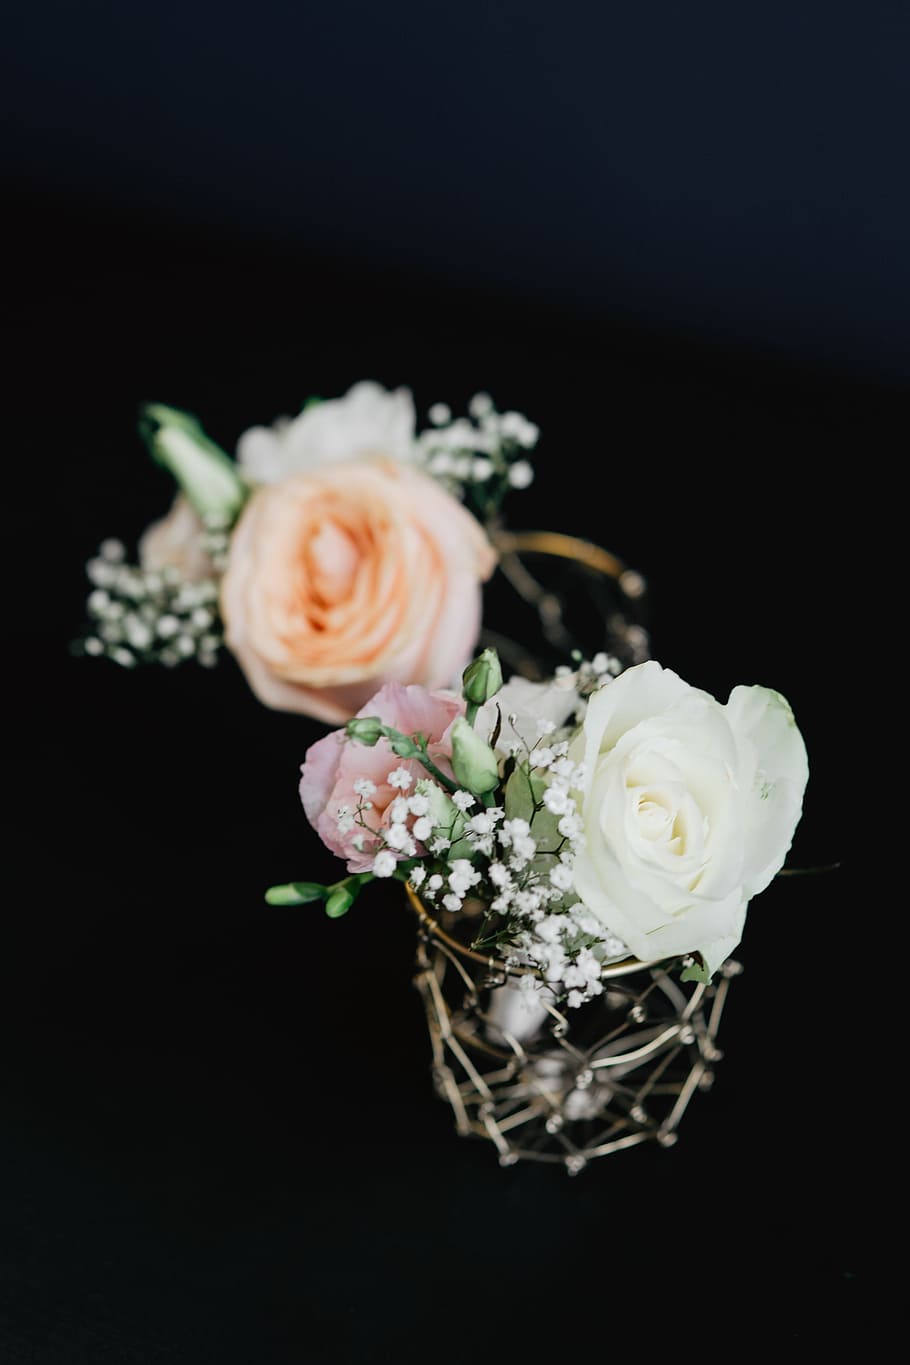 flores do casamento, flores, casamento, buquê, bouqet, flor, planta de florescência, fundo preto, rosa, frescura